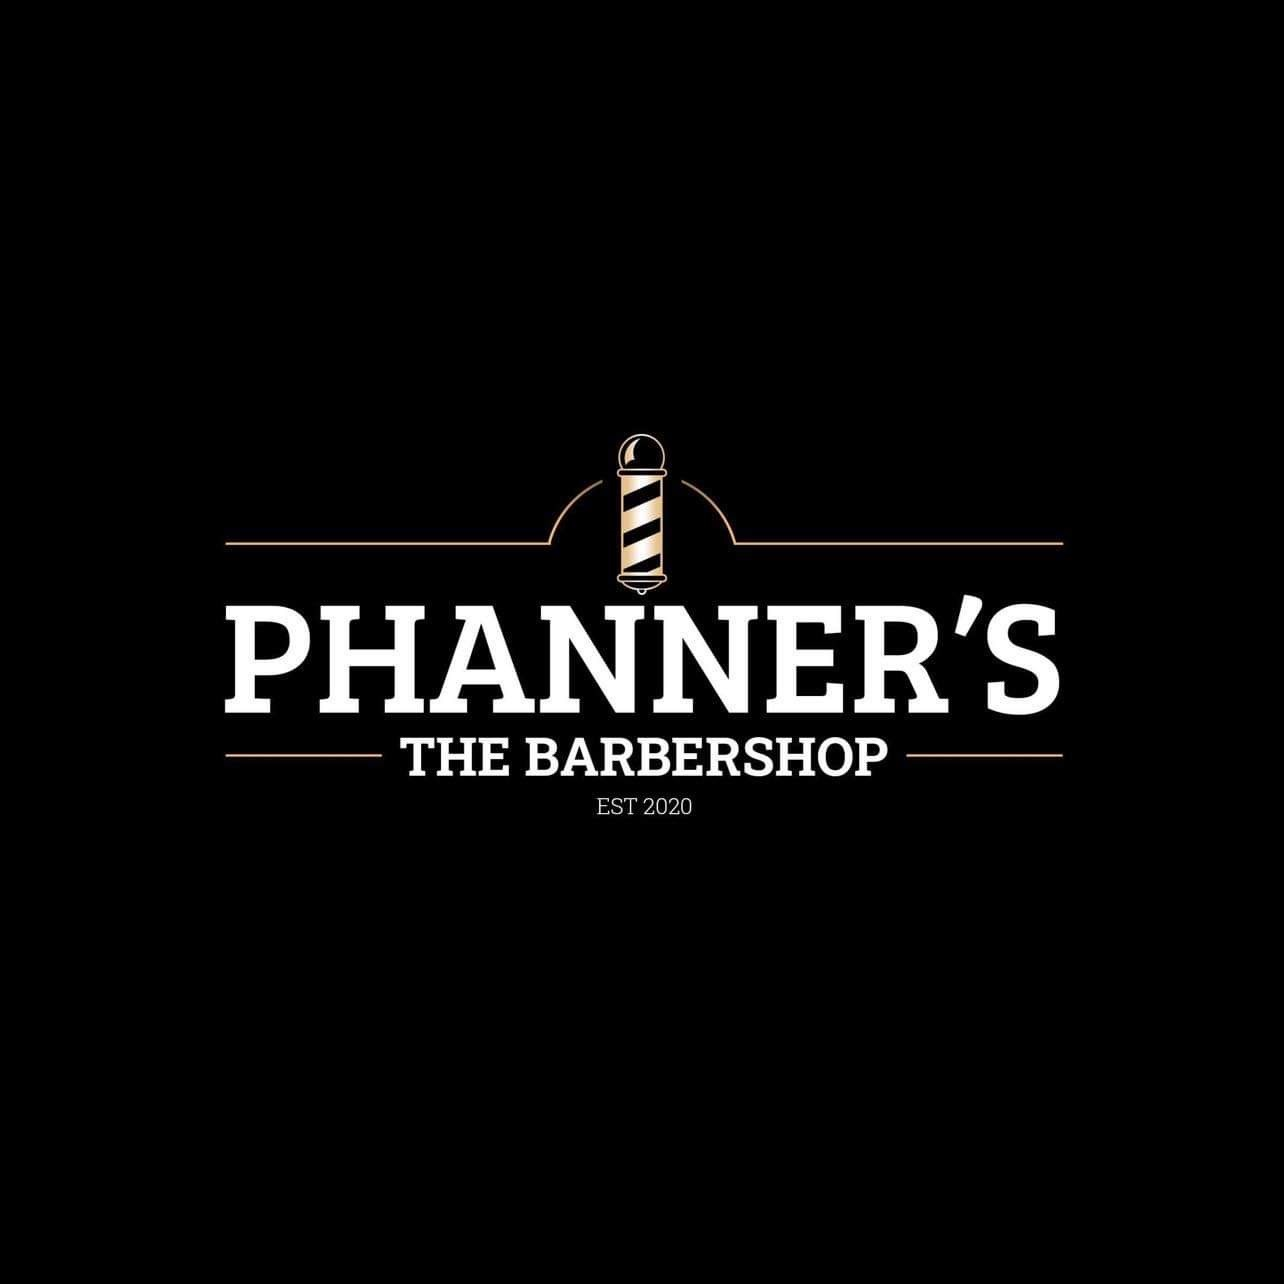 Phanner's Barbershop